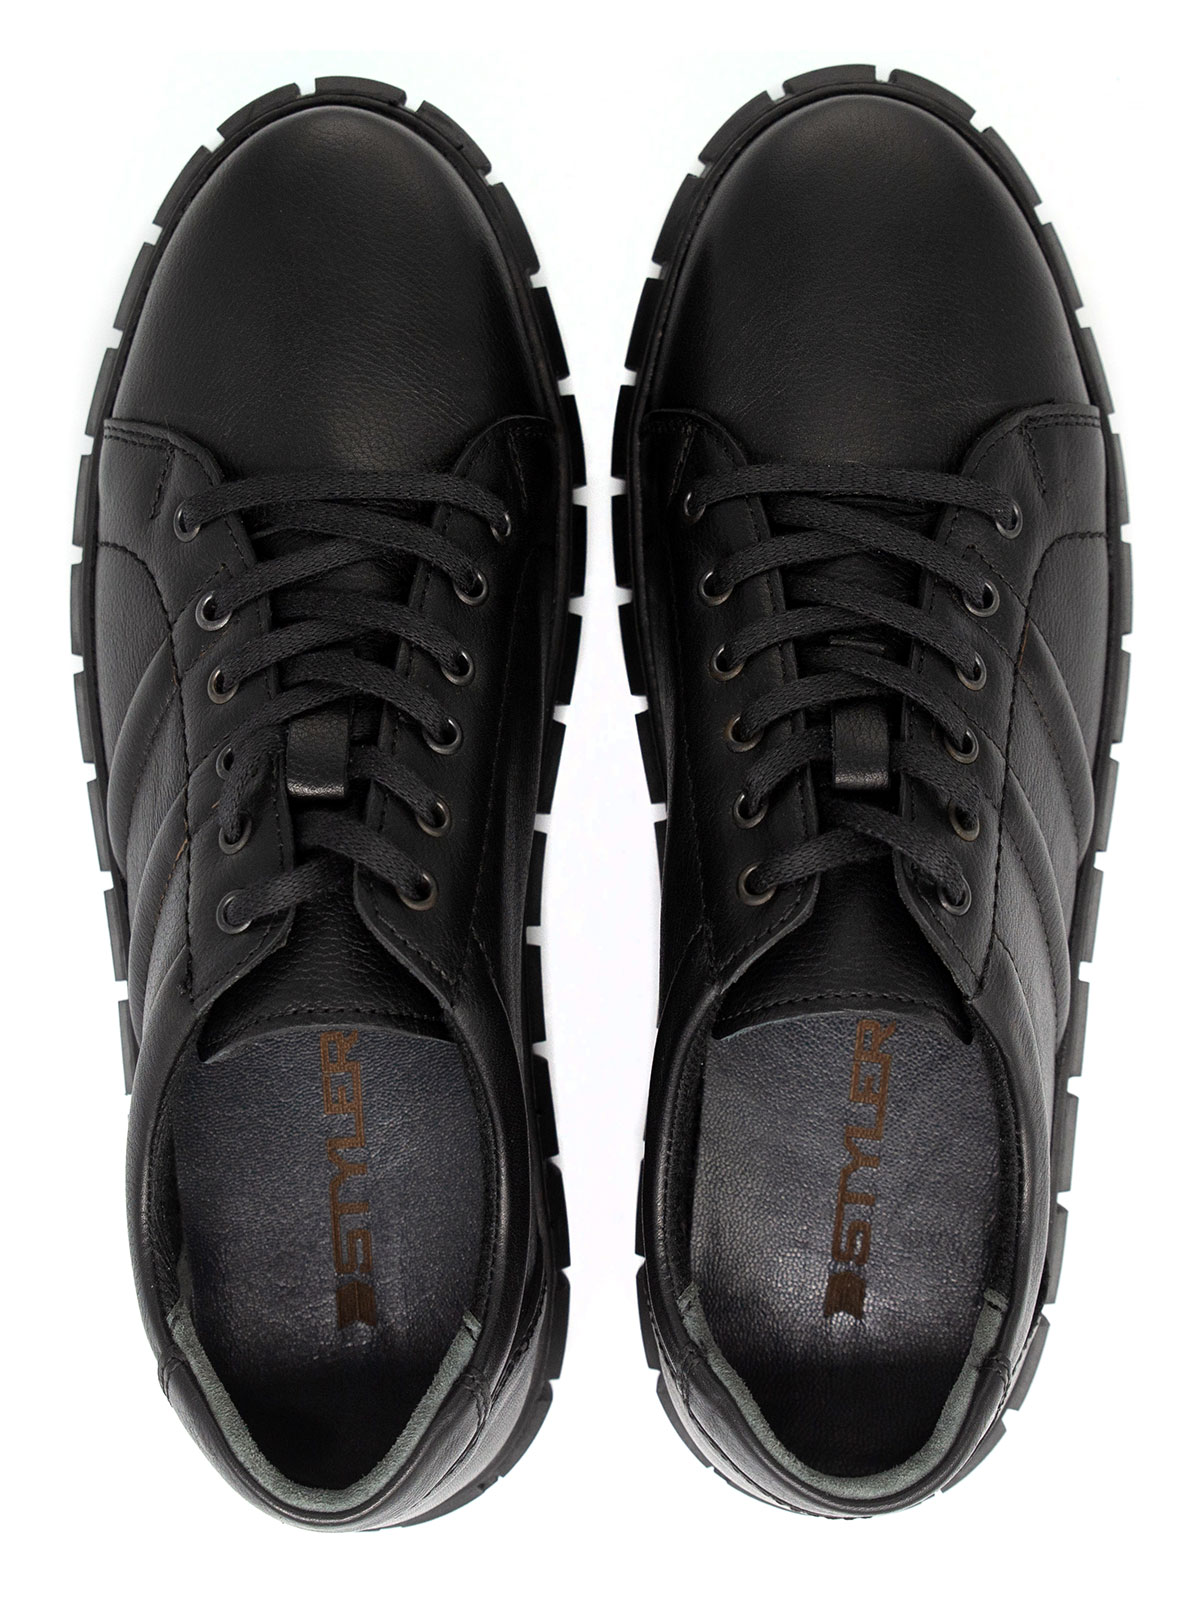 Μαύρα αθλητικά δερμάτινα παπούτσια - 81097 - € 51.74 img2